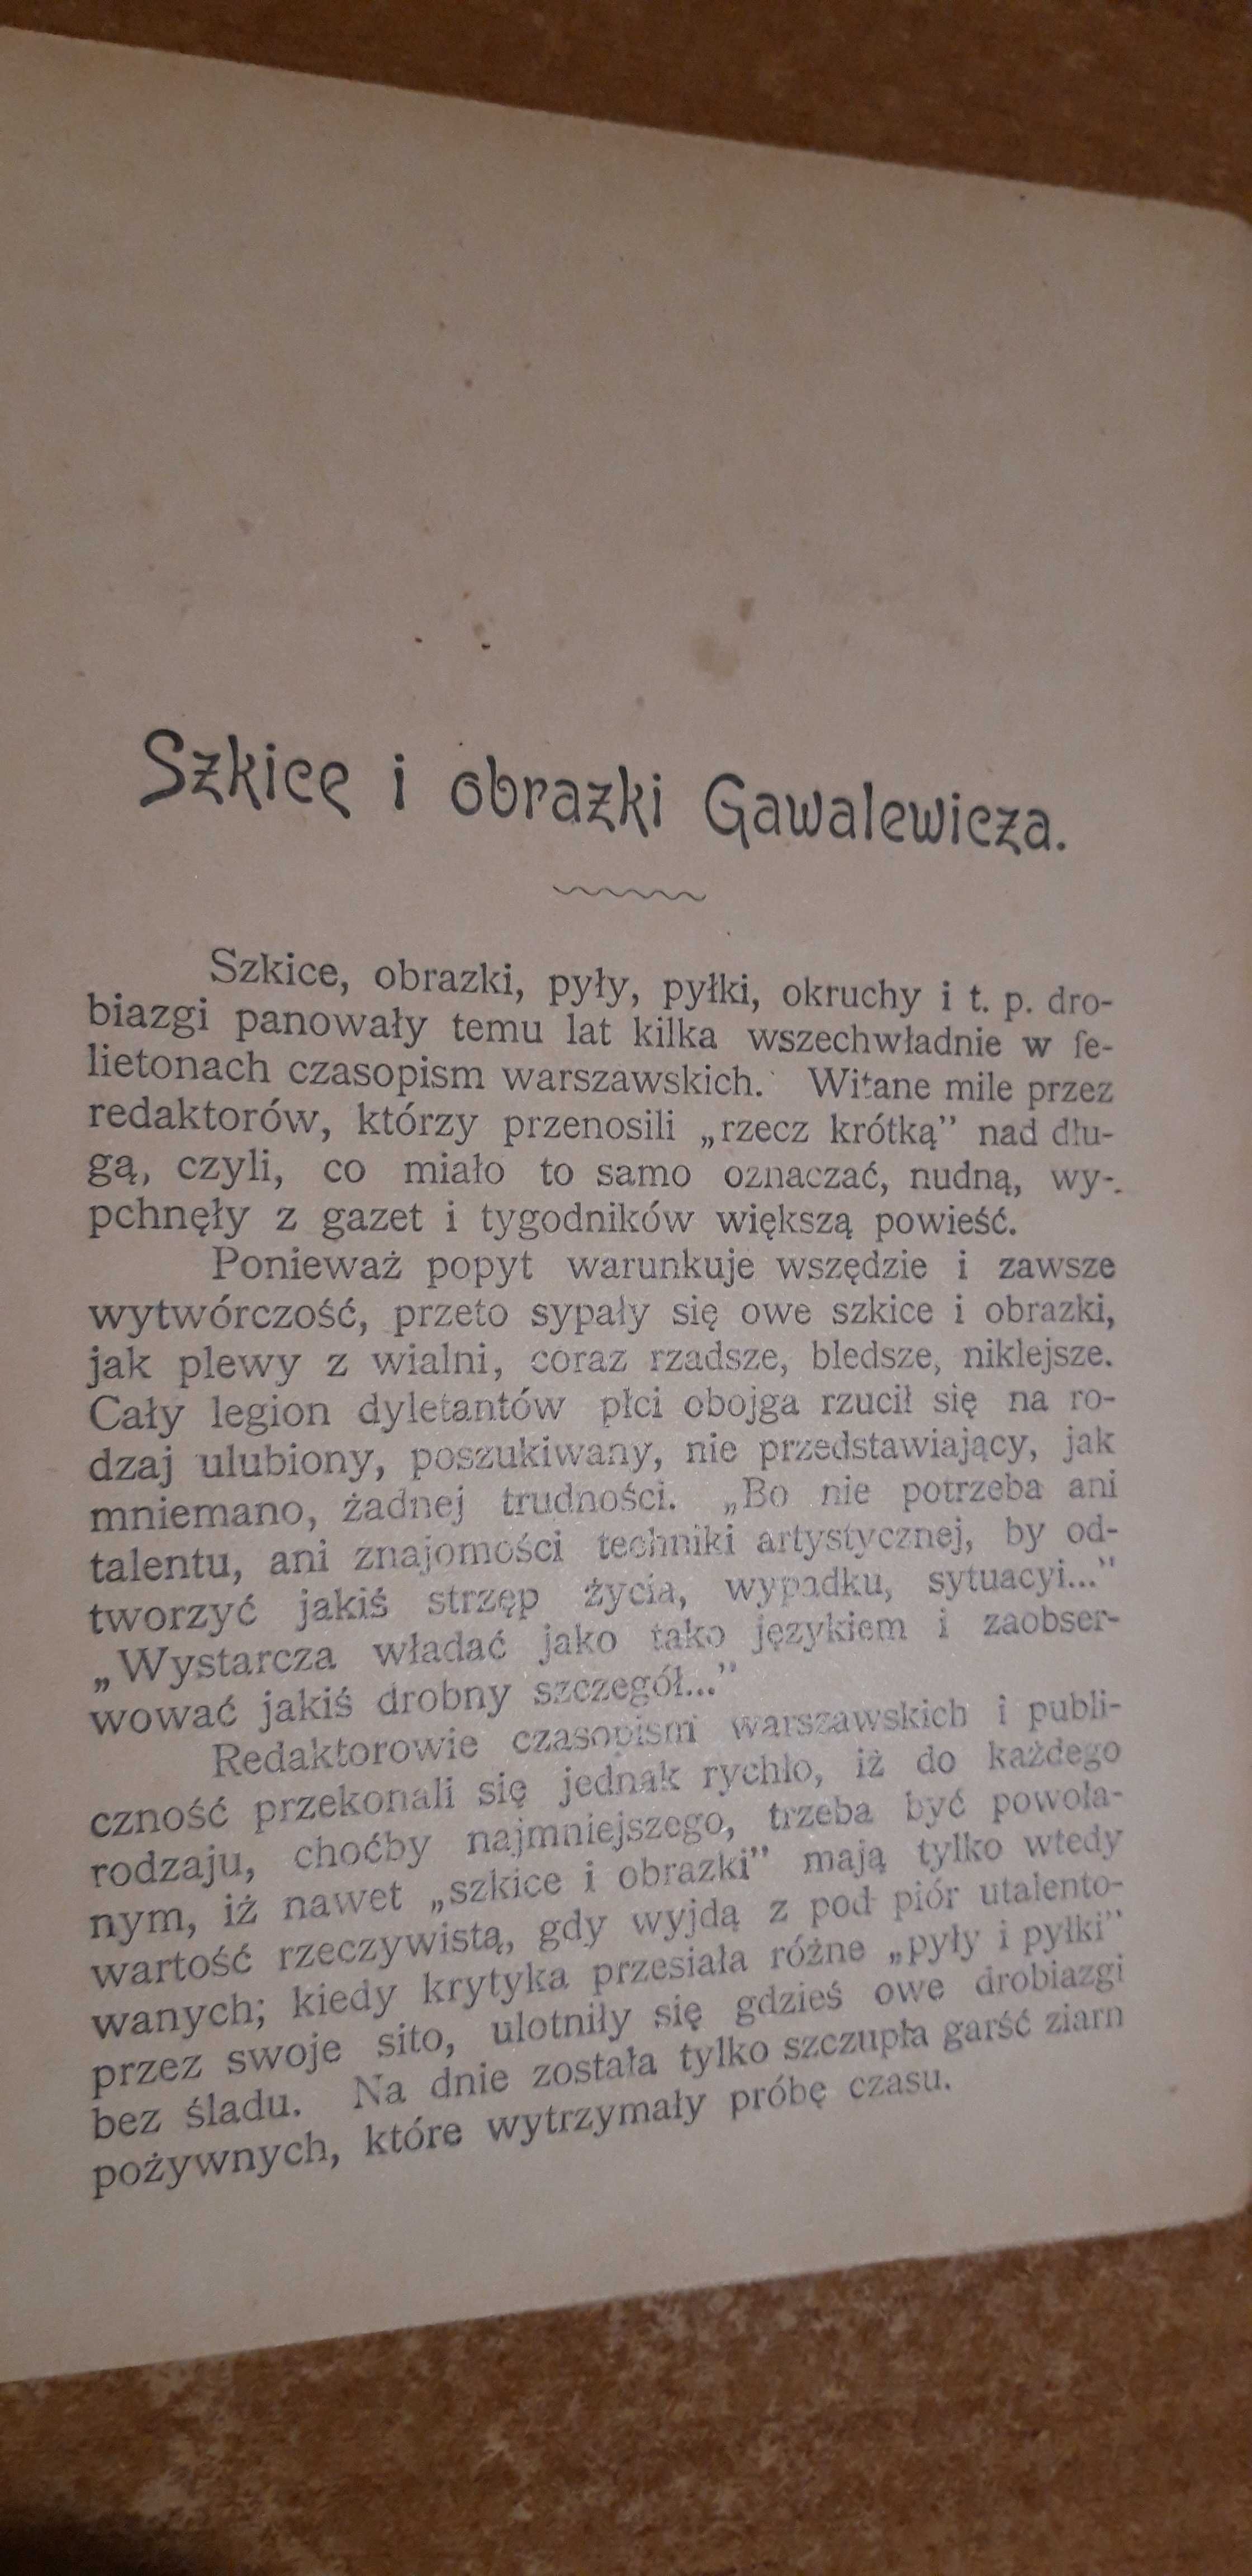 SZKICE i OBRAZKI -M. Gawalewicz - 1898,opr.